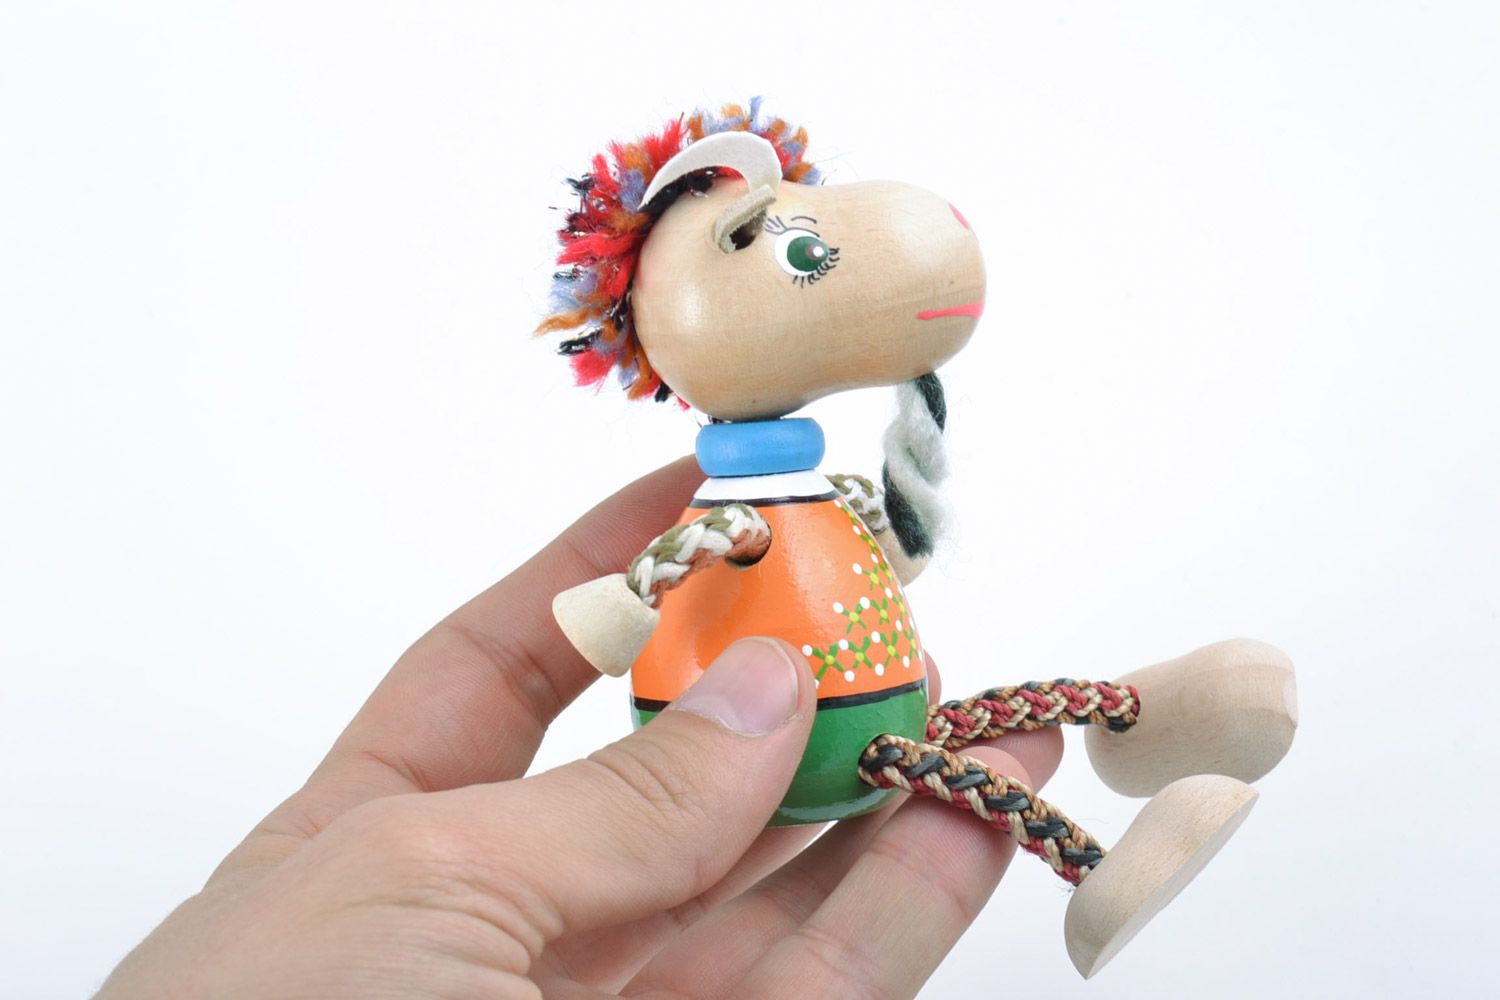 Jouet en bois original fait main peint figurine décorative pour enfant Chèvre photo 2